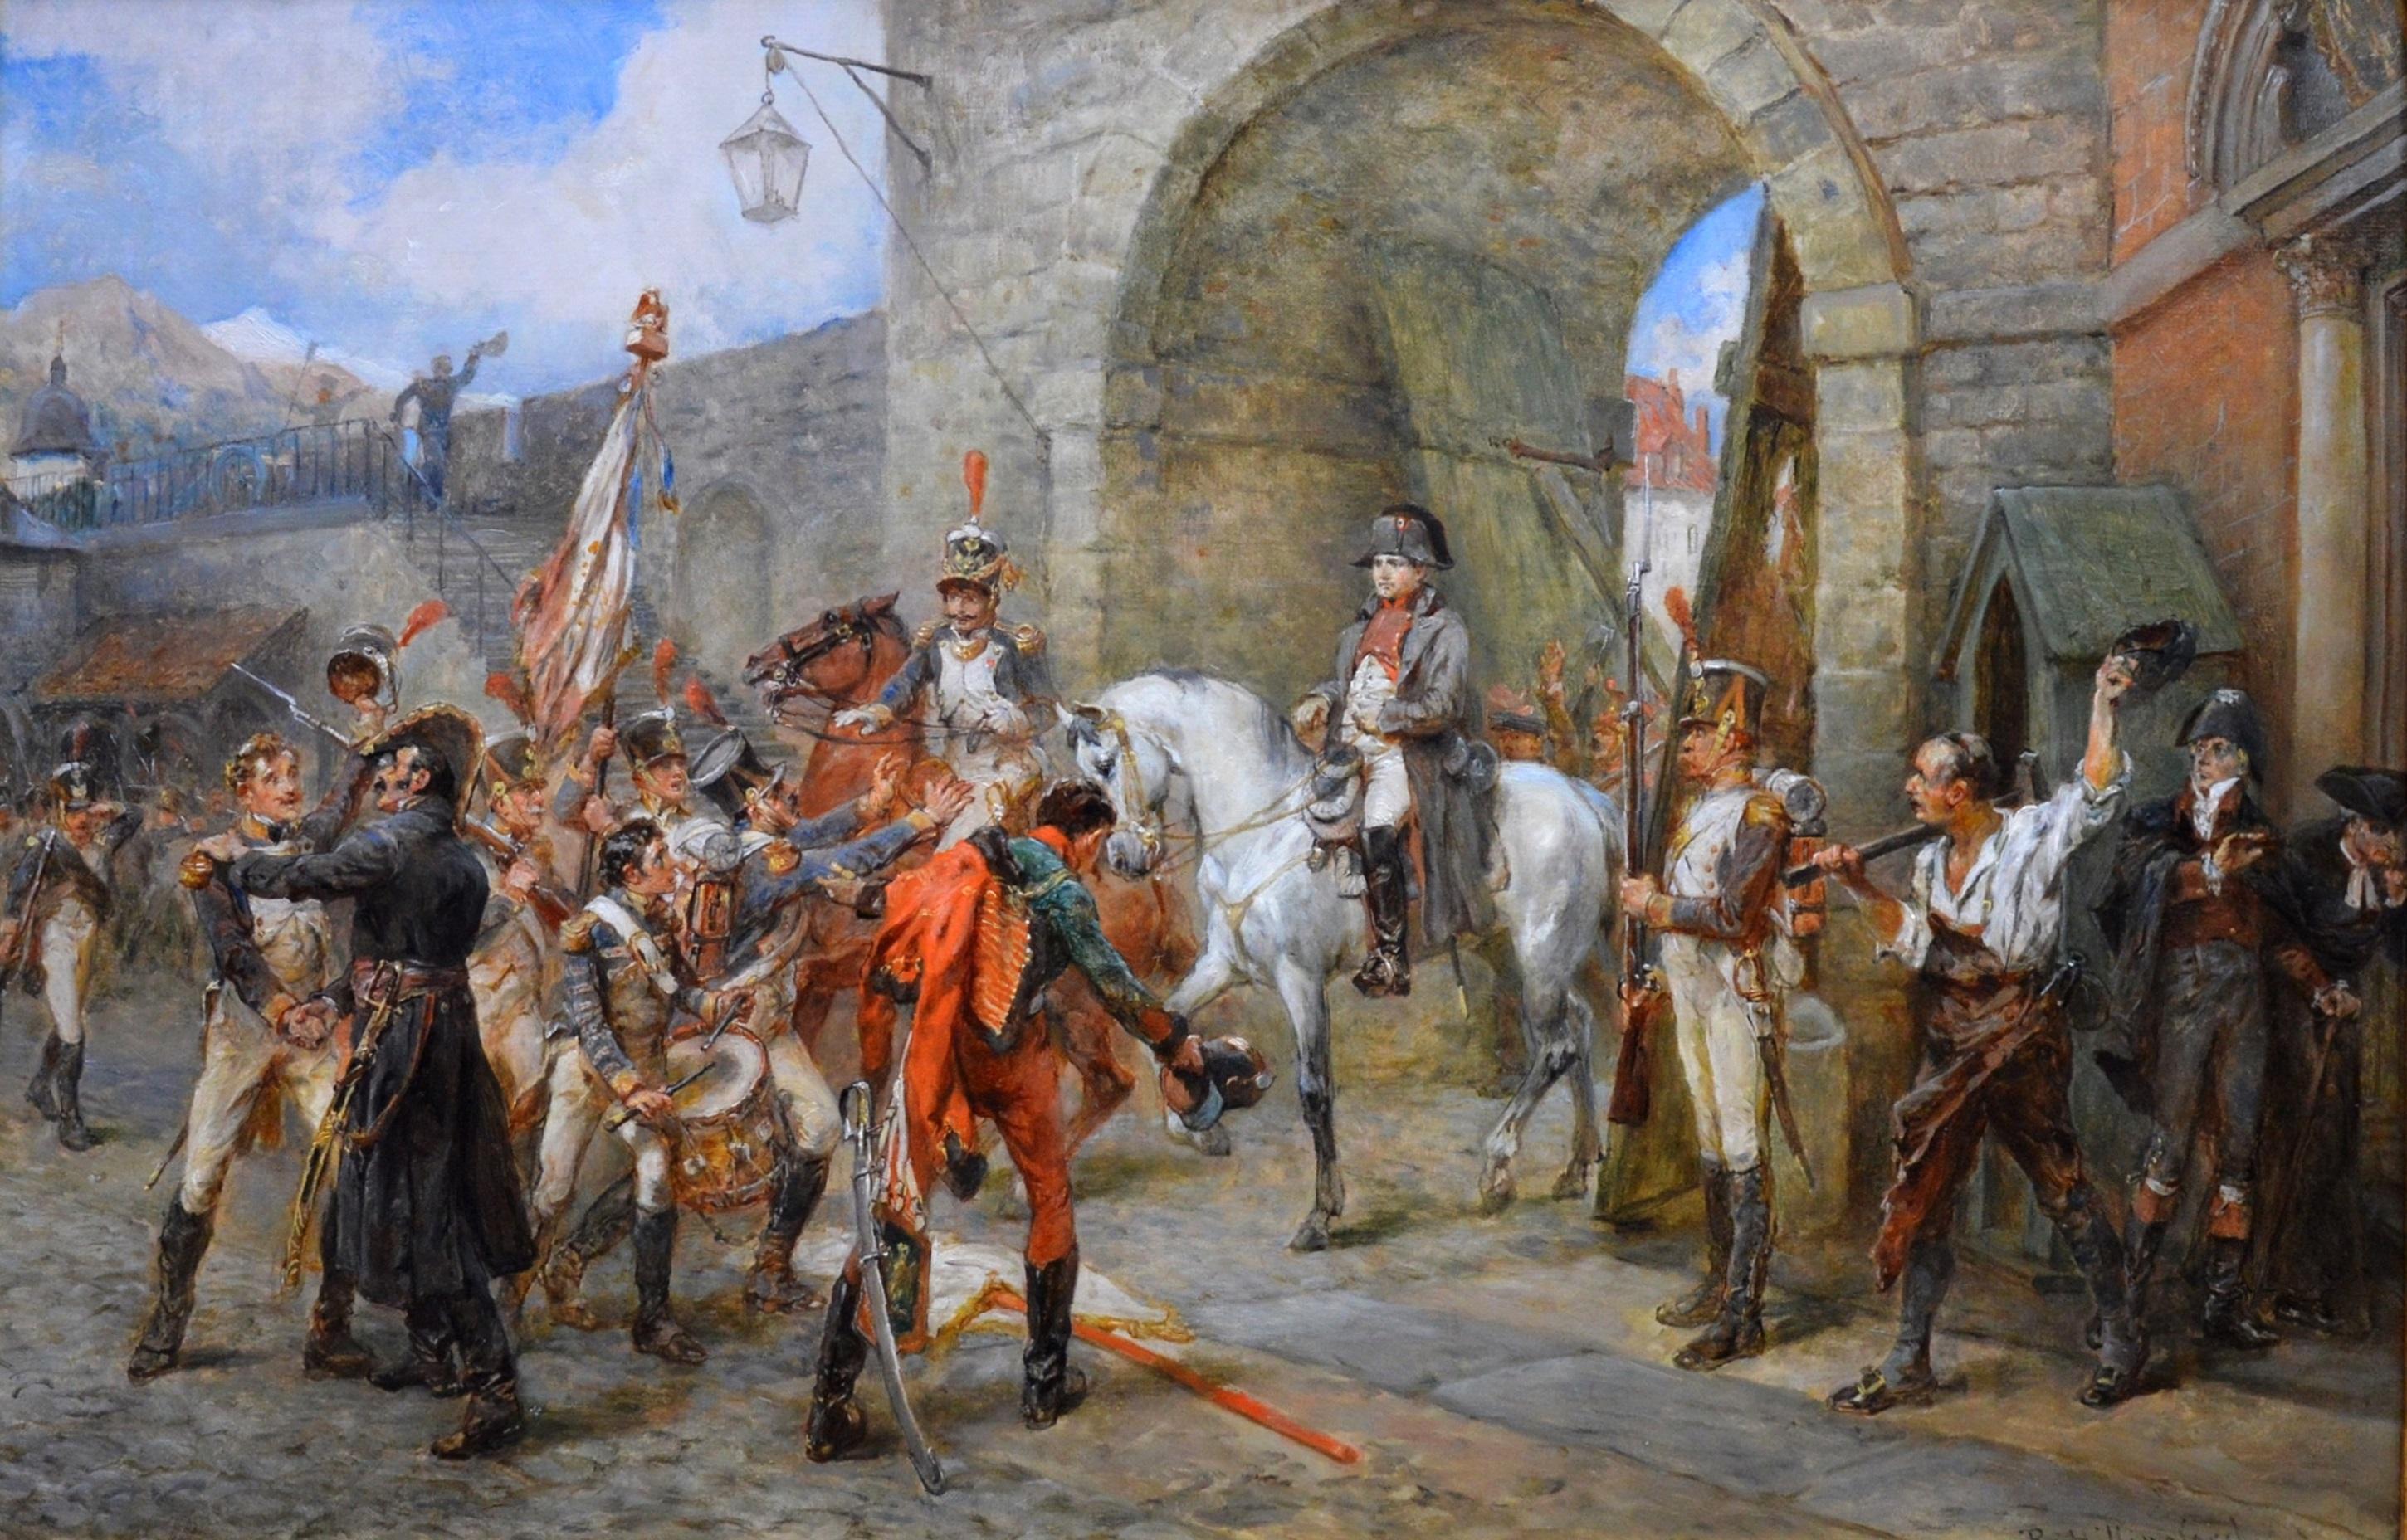 napoleon at war painting